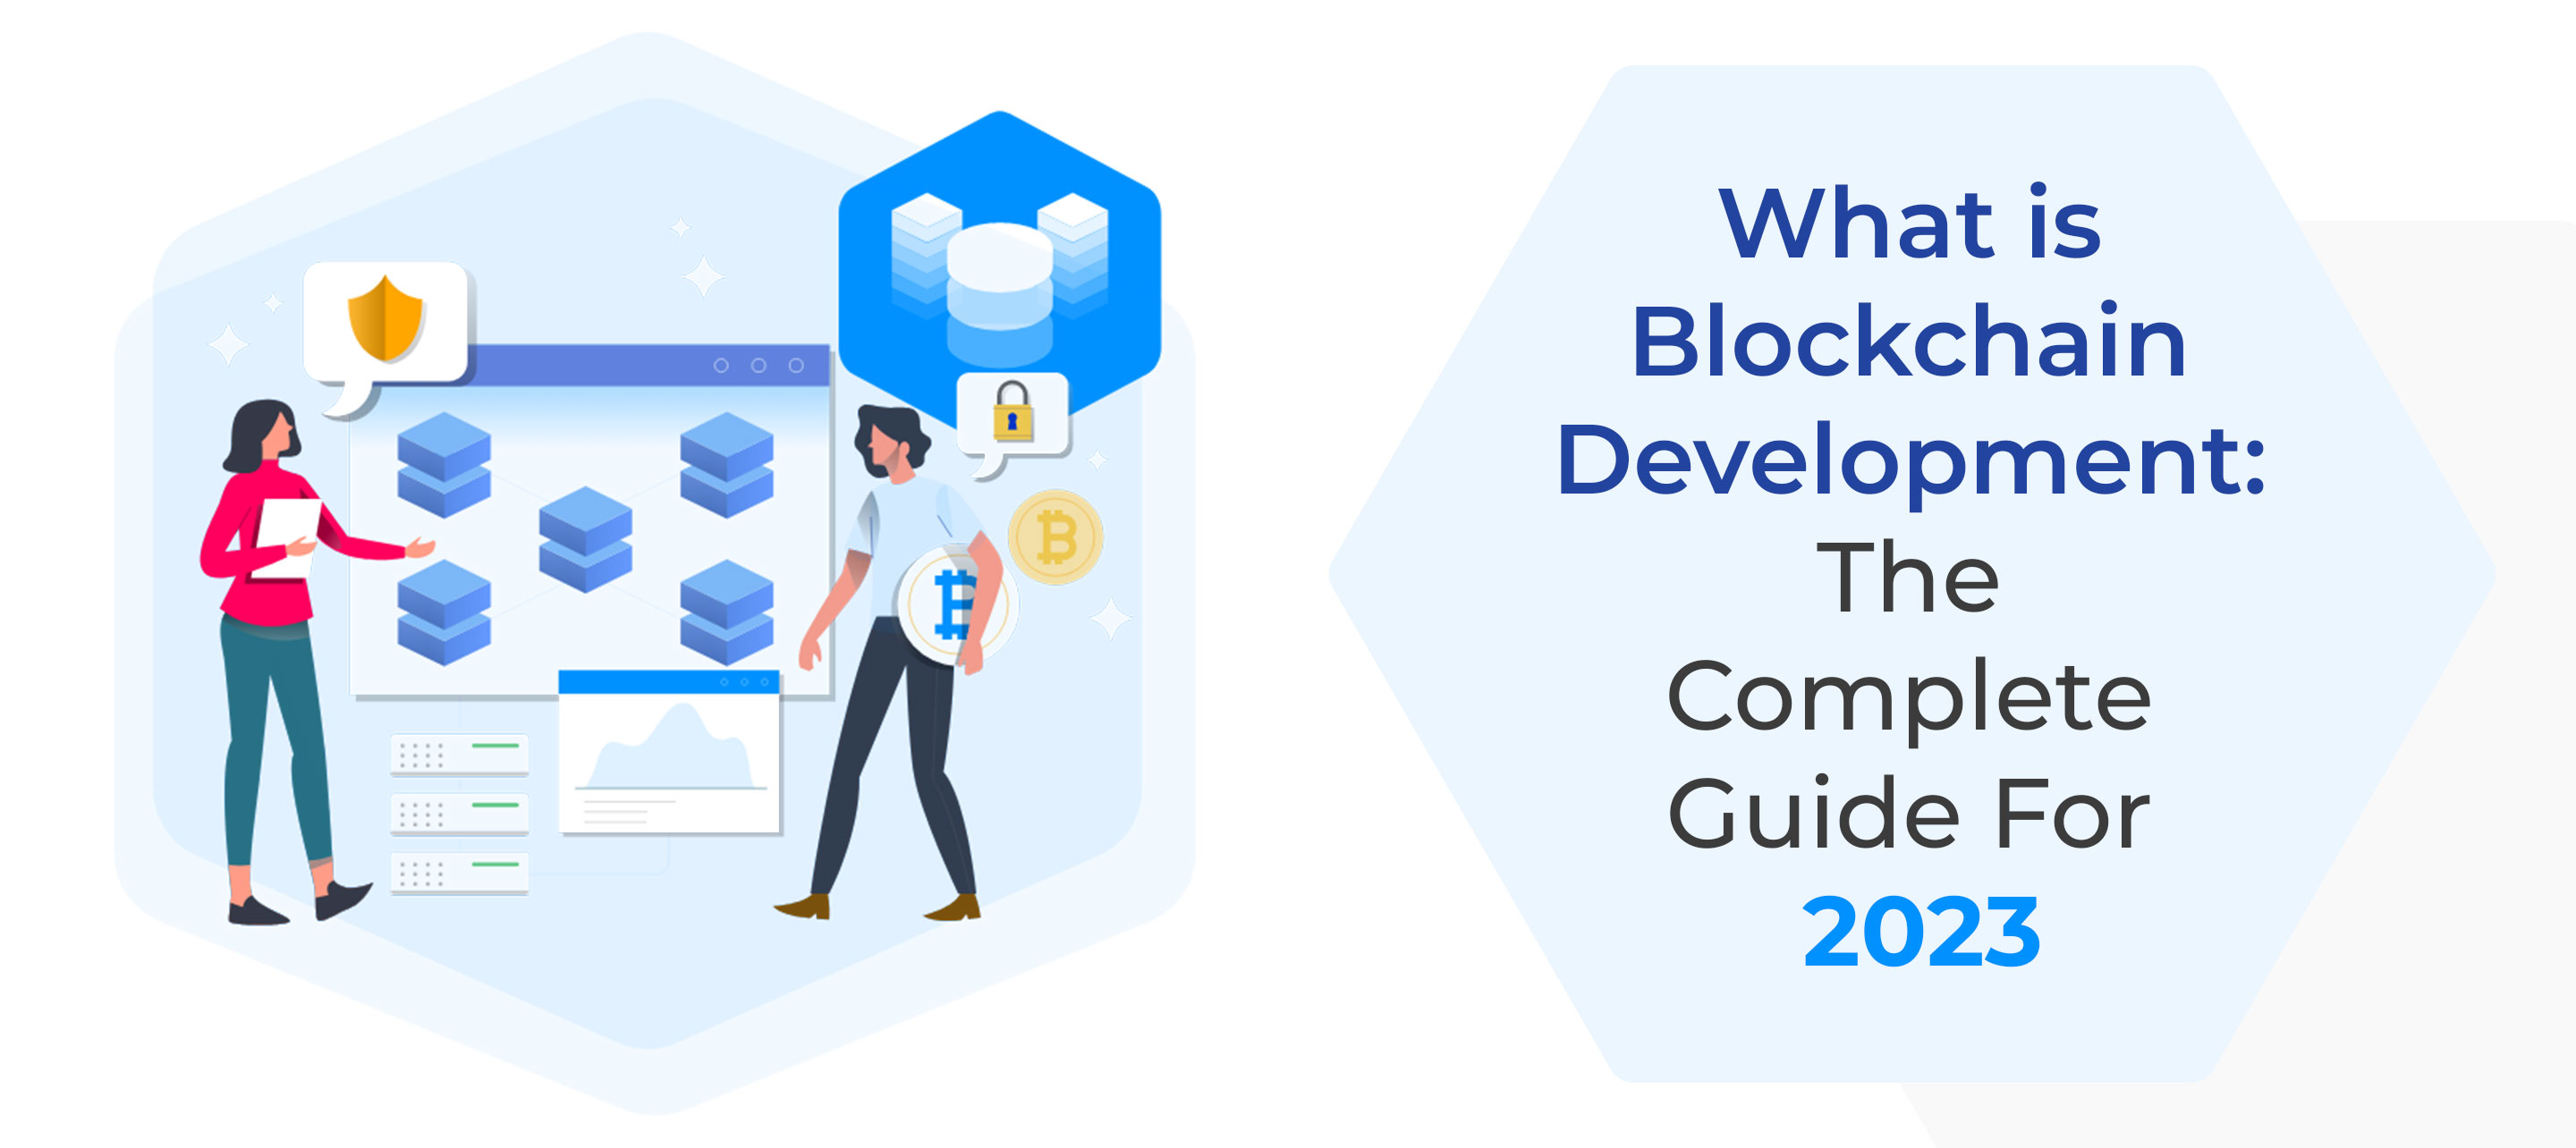 What is Blockchain Development